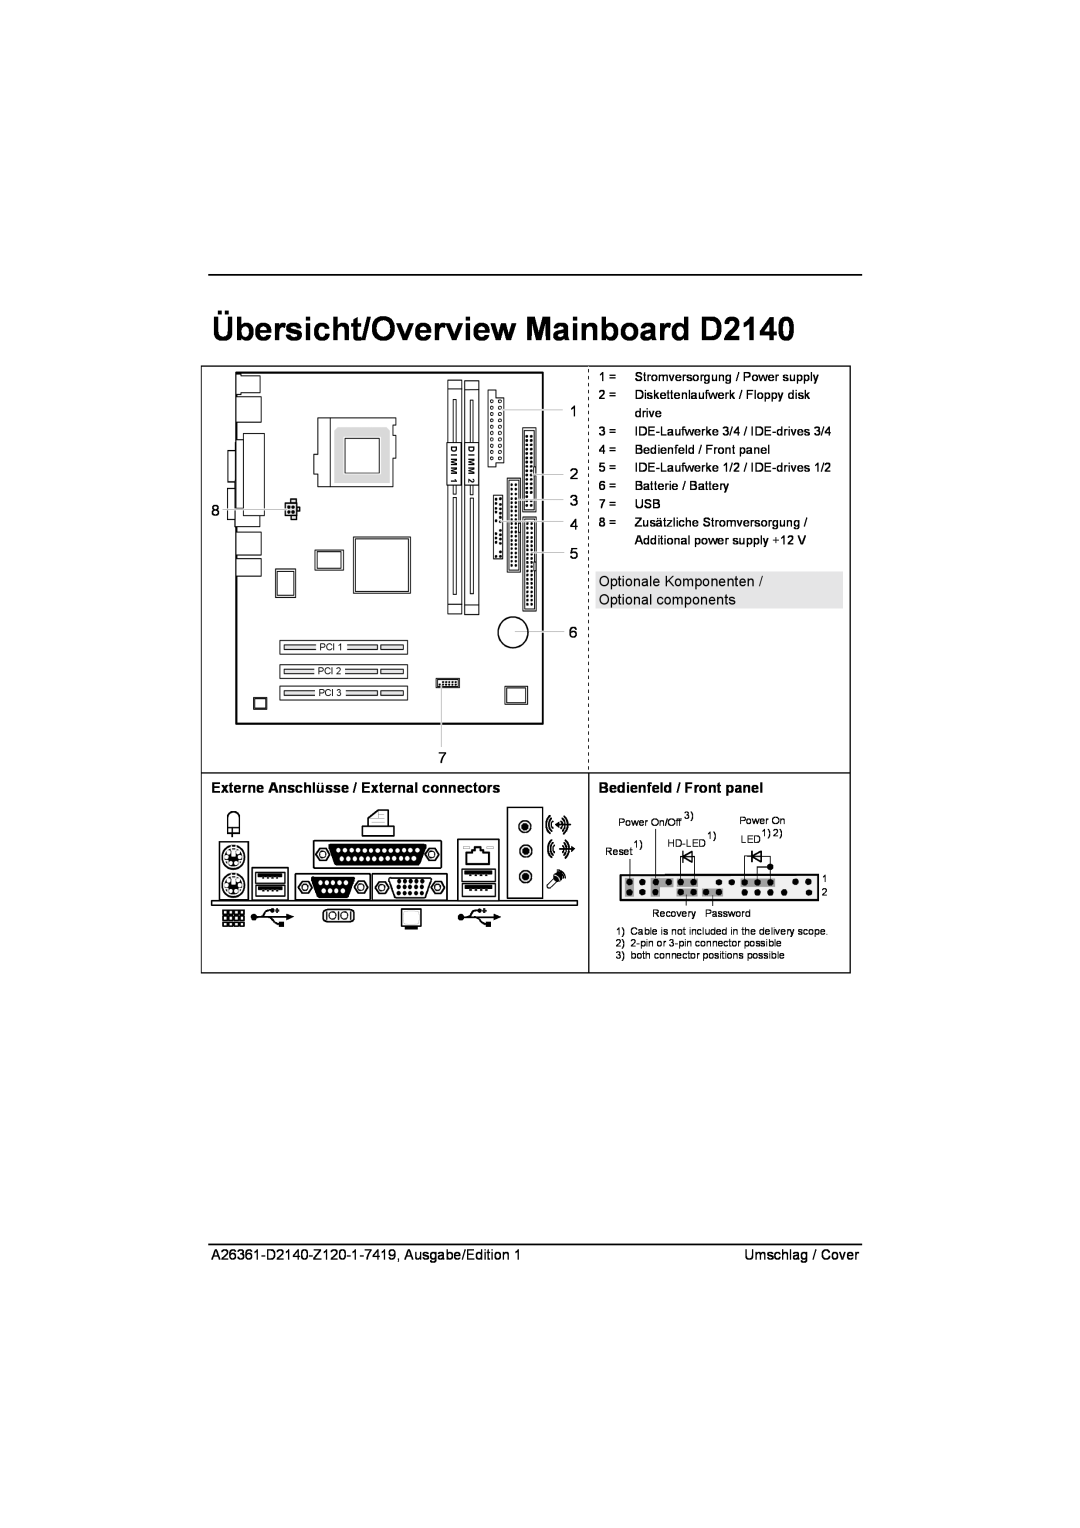 Eclipse - Fujitsu Ten technical manual Übersicht/Overview Mainboard D2140, Externe Anschlüsse / External connectors 